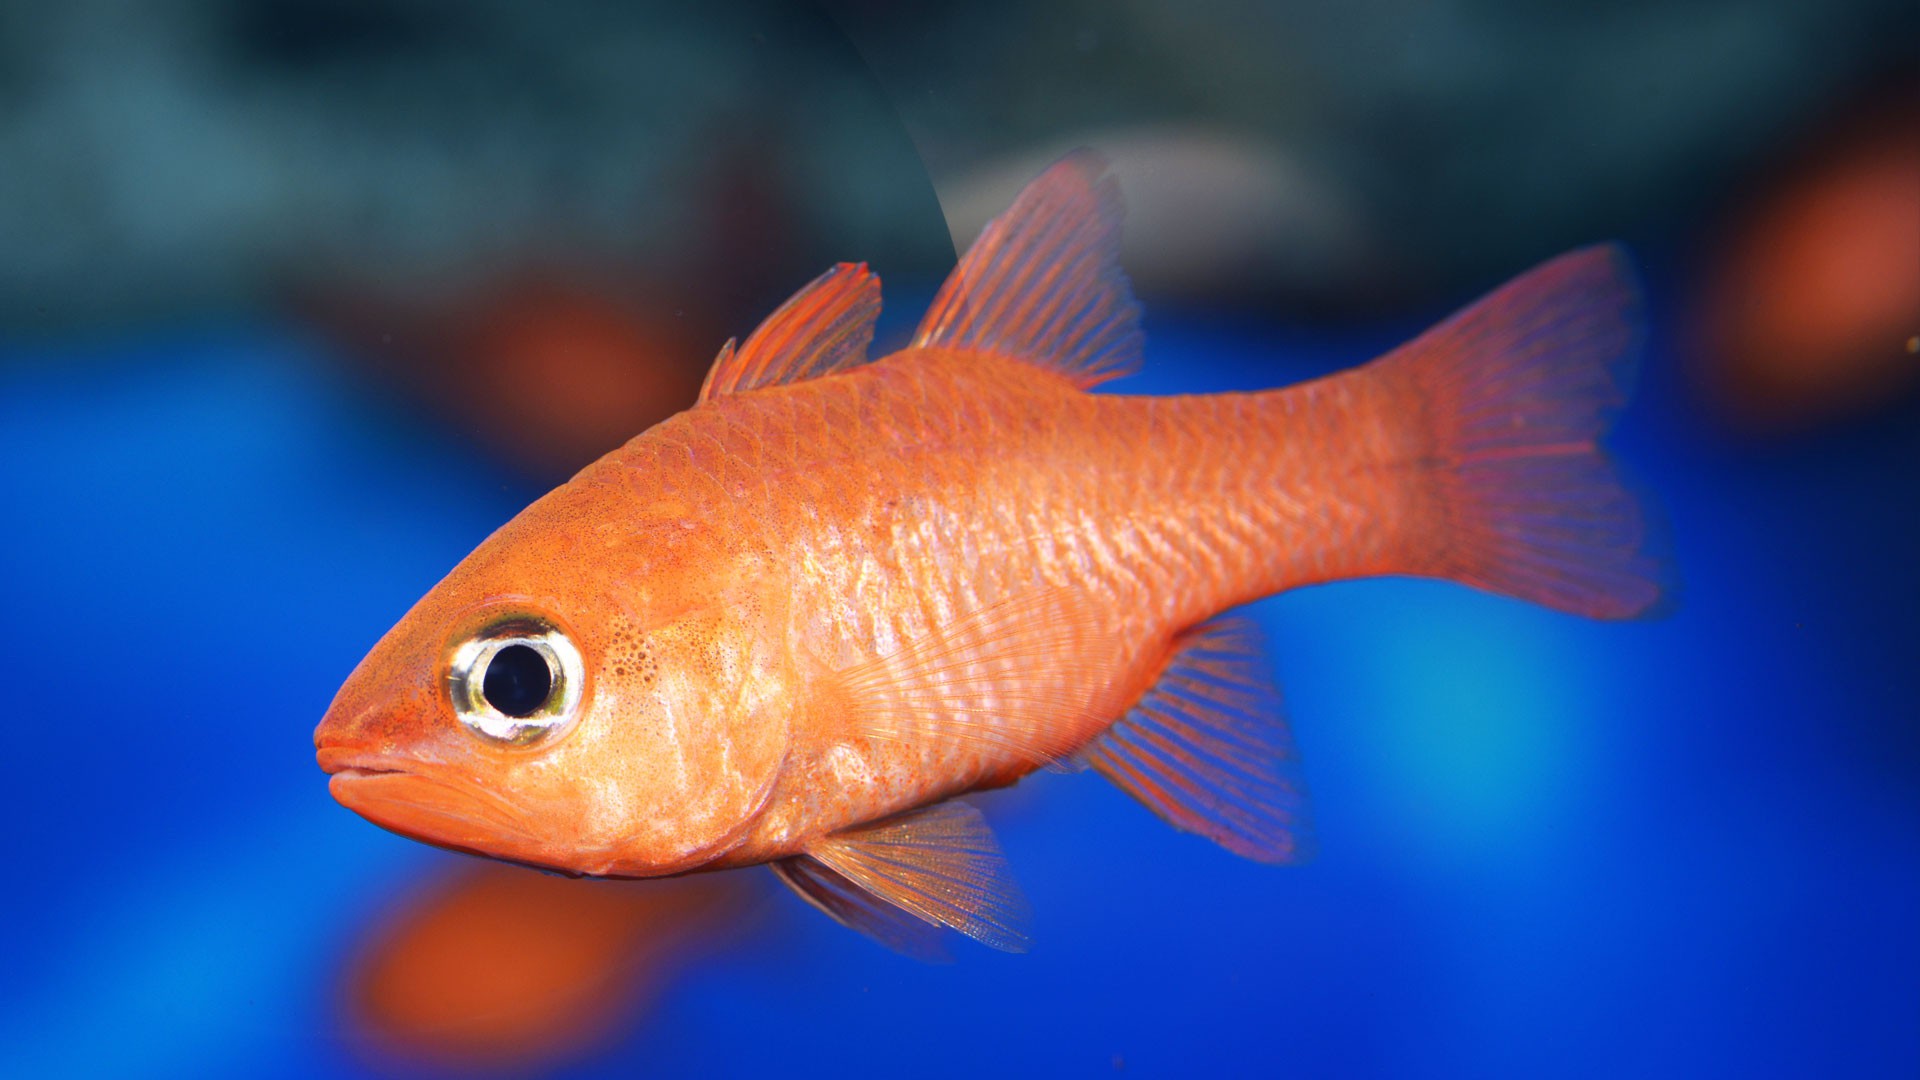 Cardinal Fish